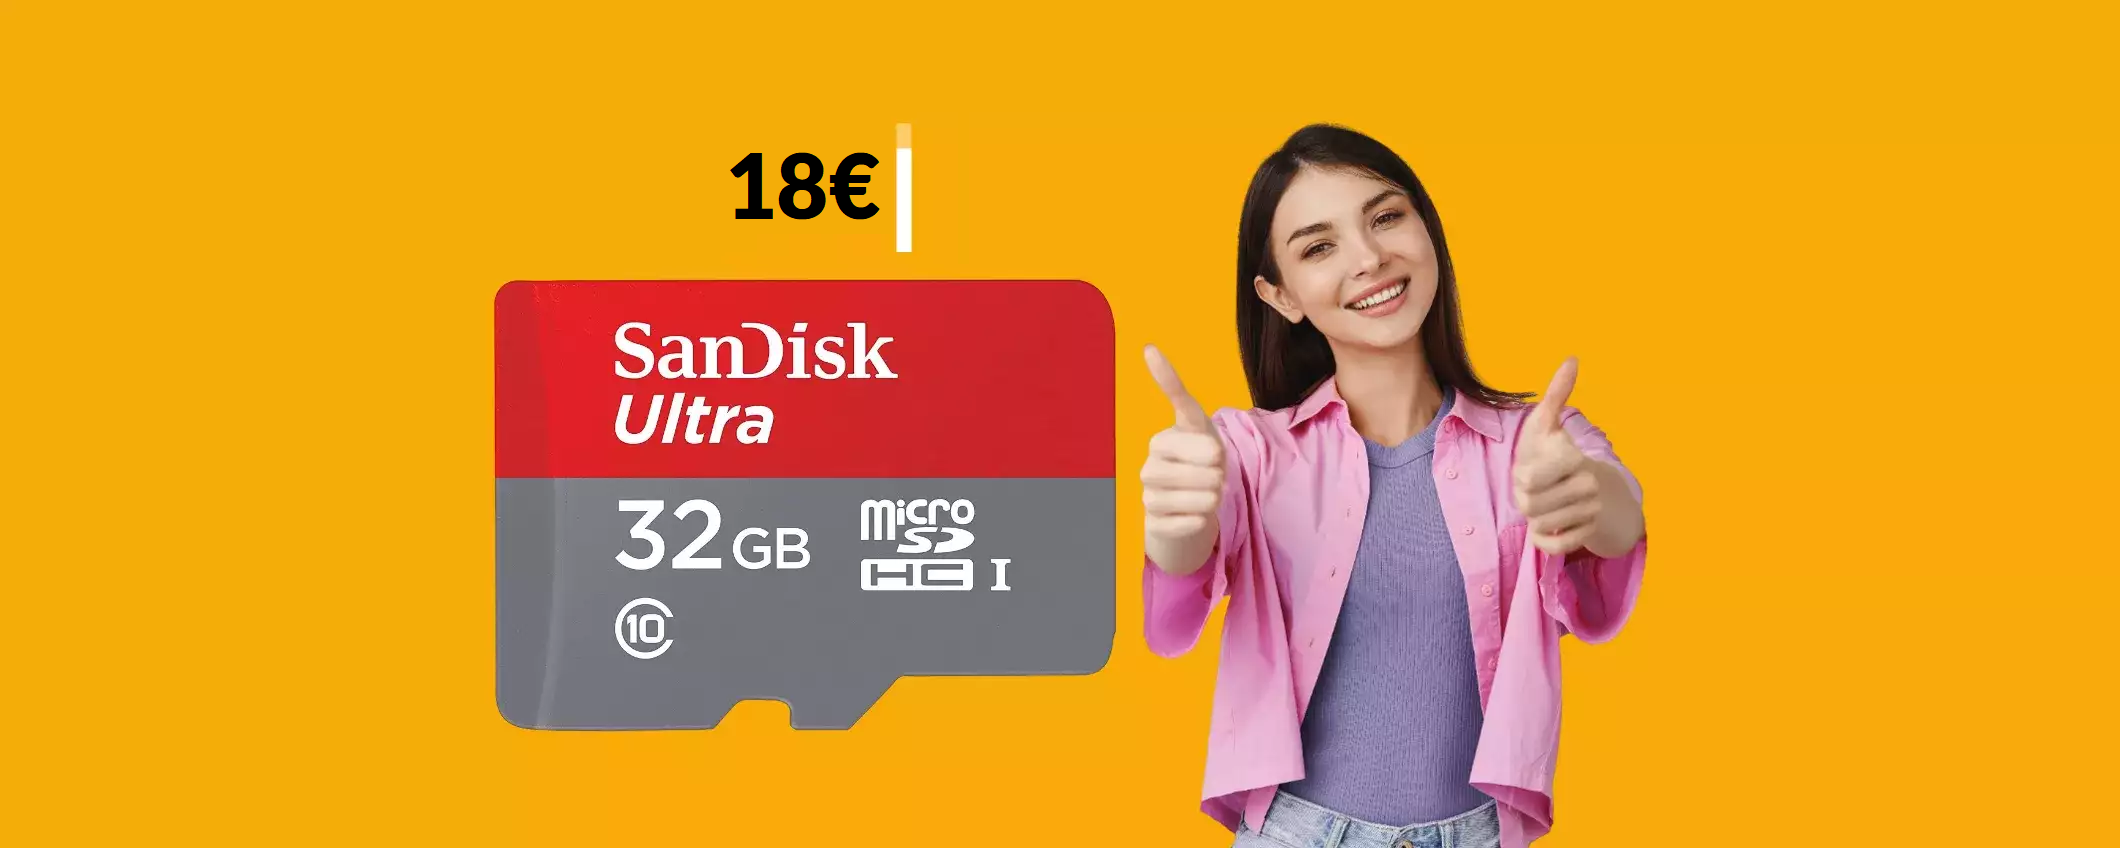 MicroSD SanDisk 32GB: bastano appena 18€ per questa BOMBA